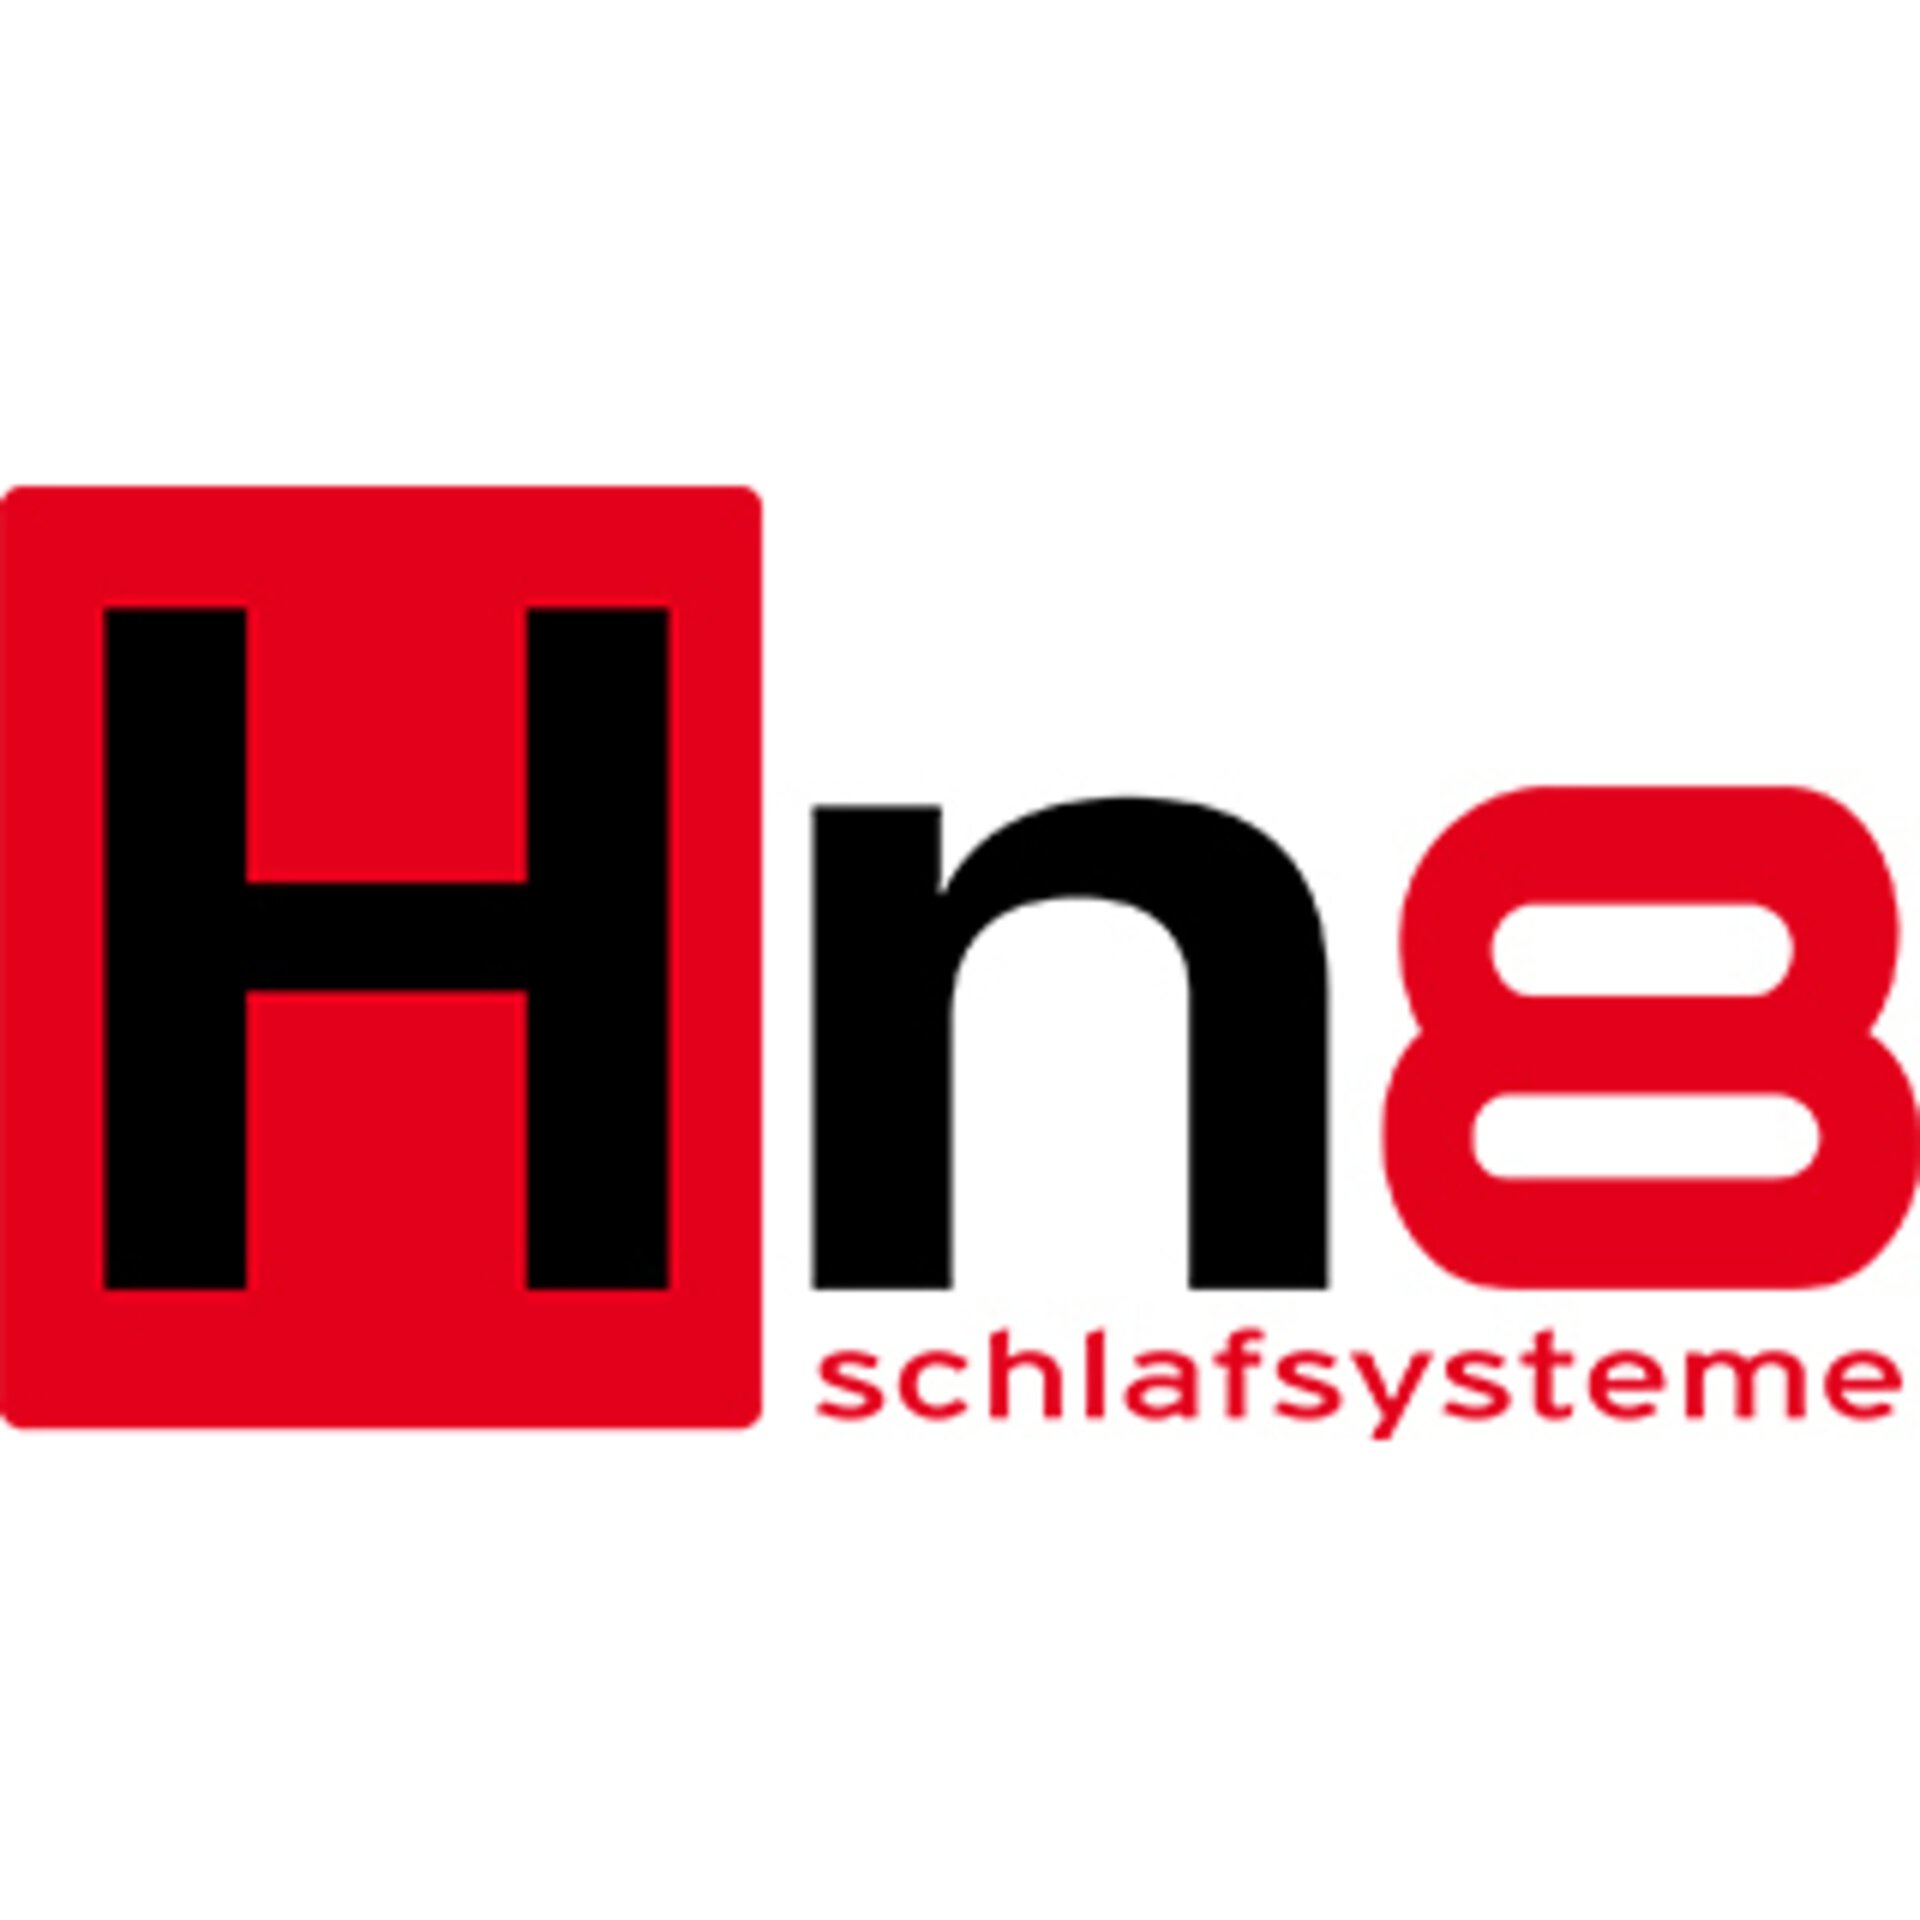 Hn(-Schlafsysteme Logo